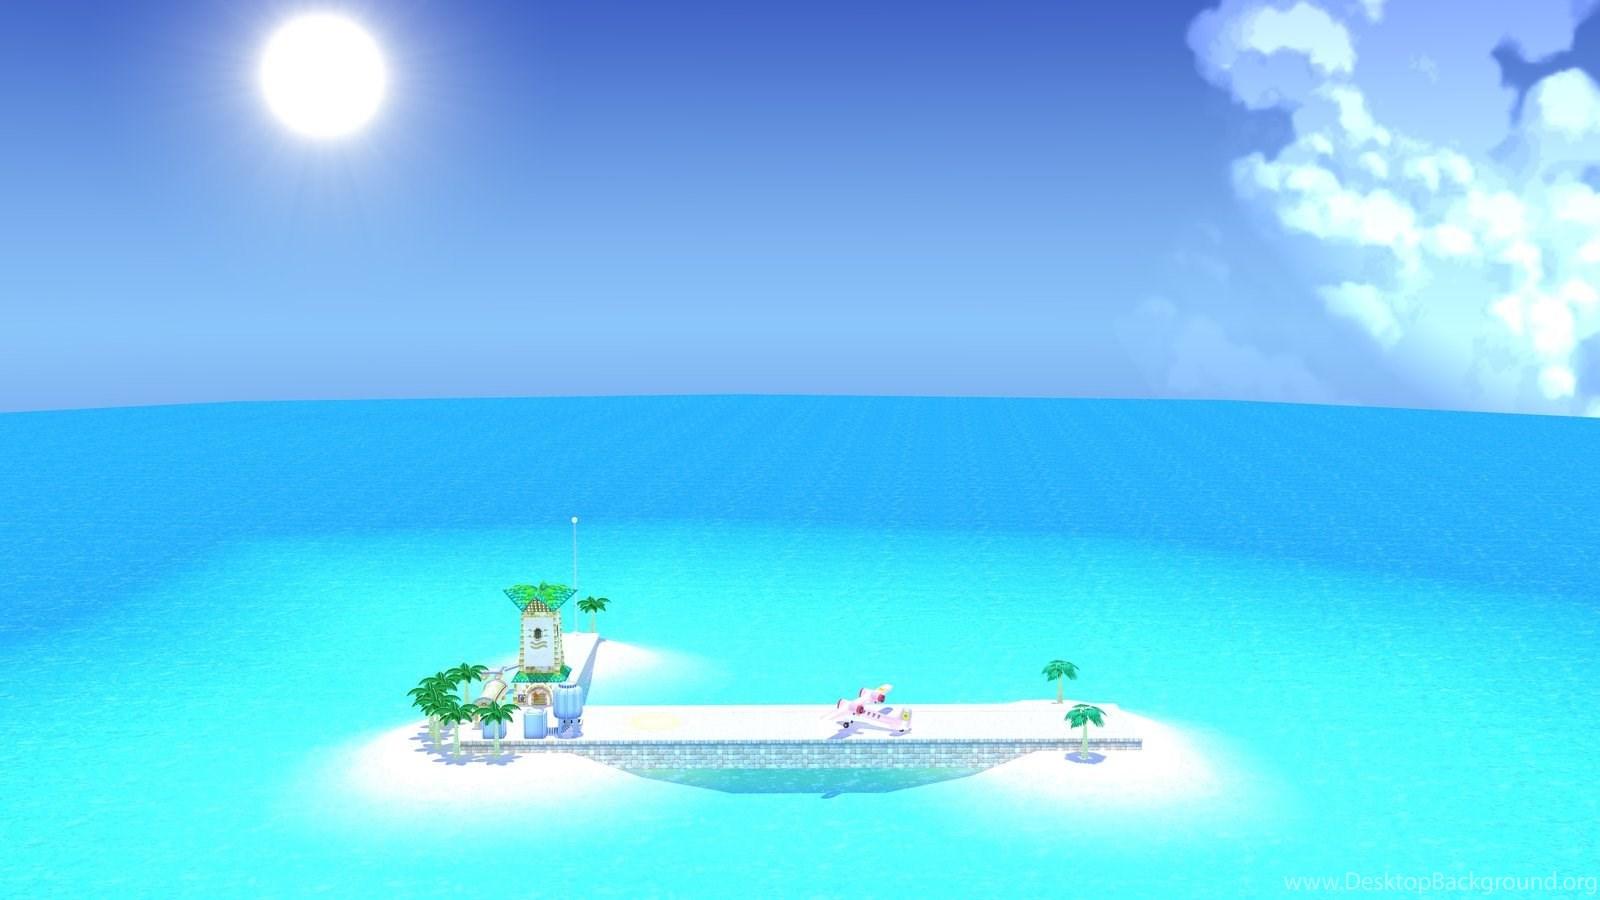 Super Mario Sunshine Mario By Fierdragon On DeviantArt Desktop